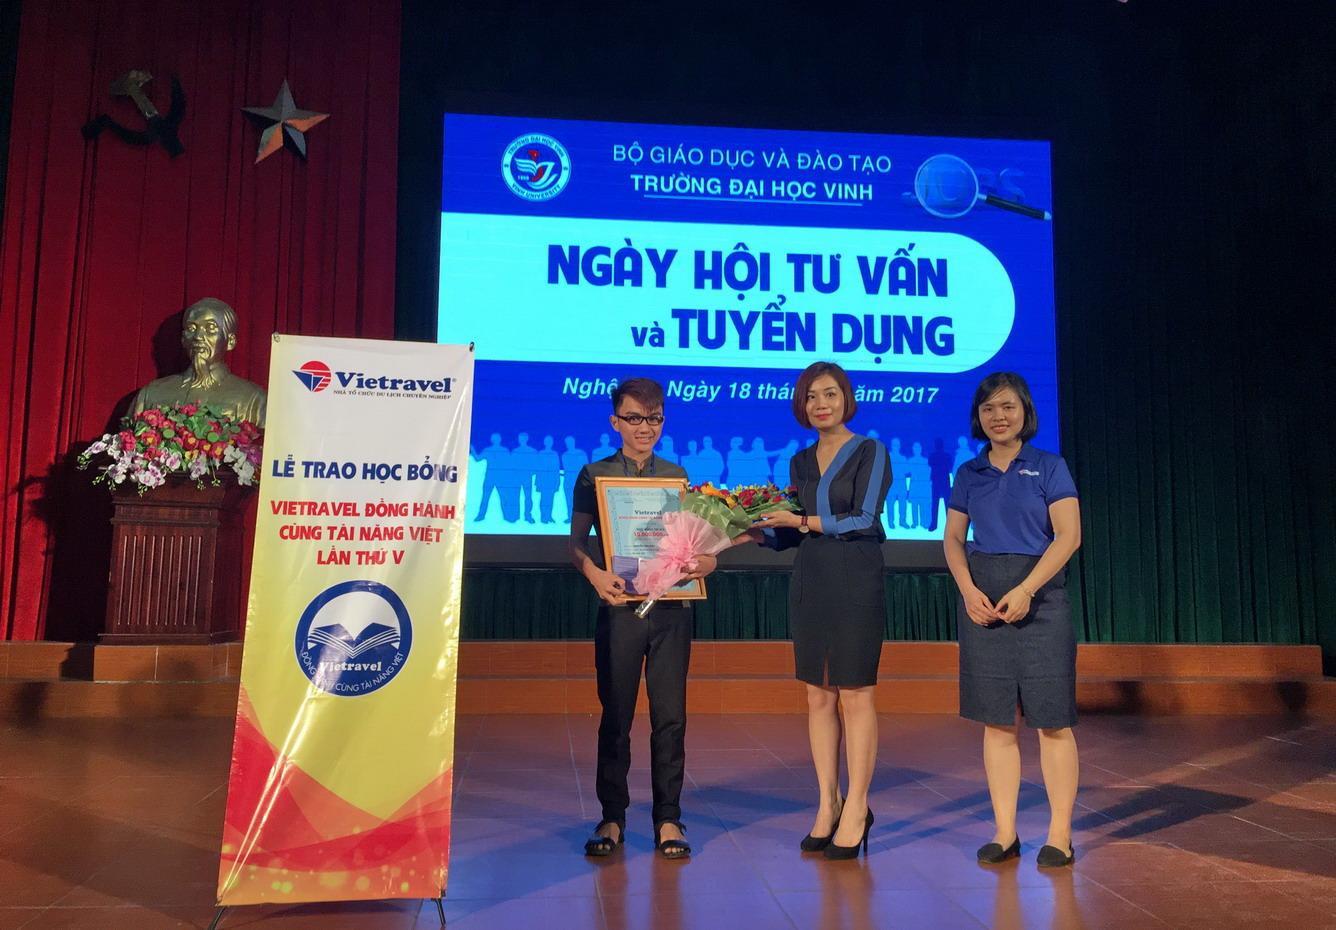 Lễ trao học bổng “Vietravel đồng hành cùng tài năng Việt” lần 5 - 2017 tại TP. Vinh